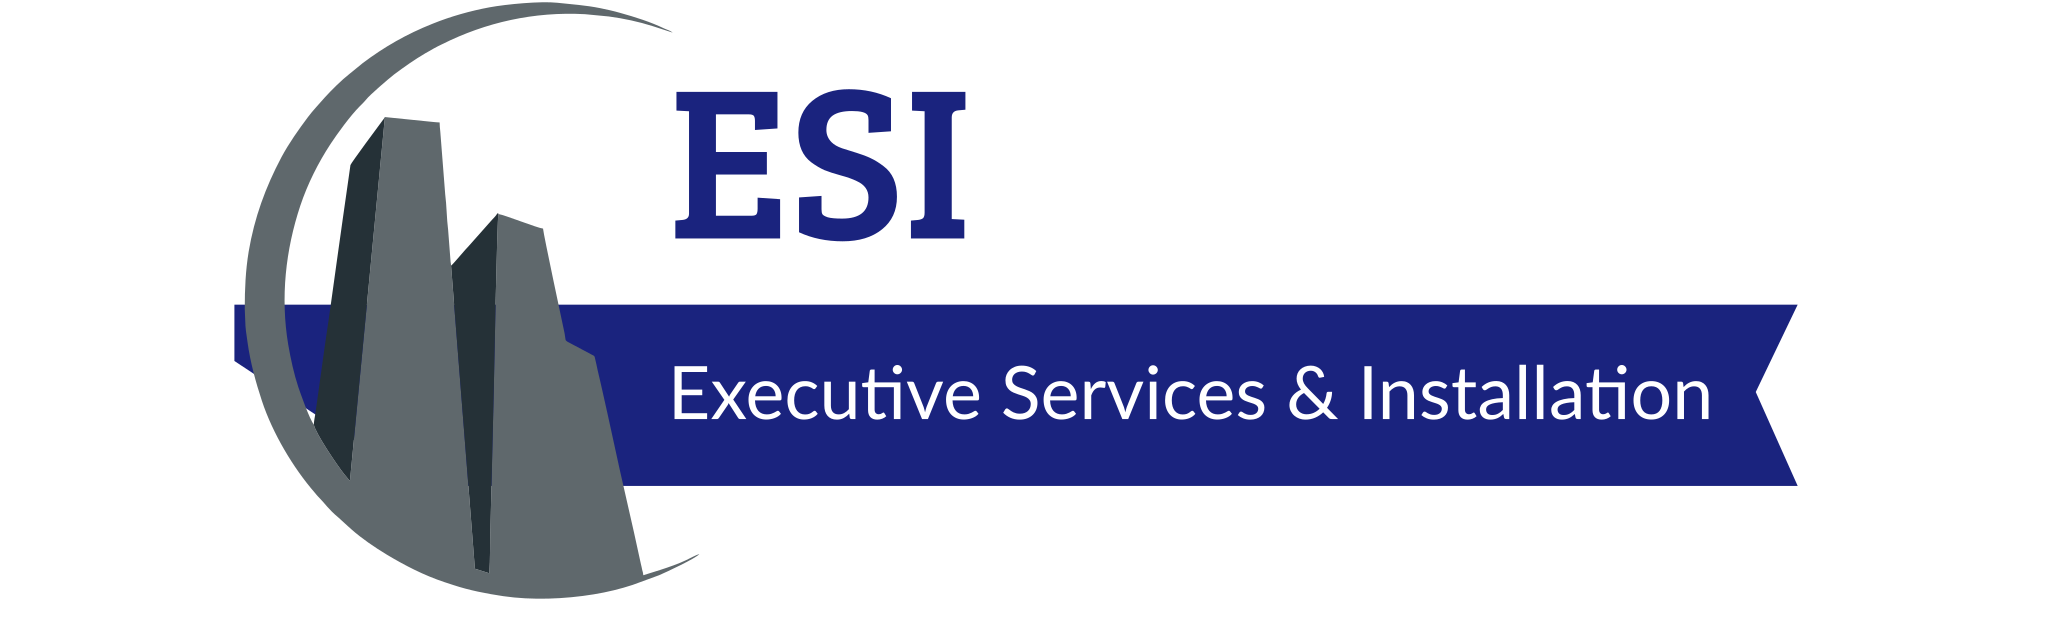 Executive Services & Installation